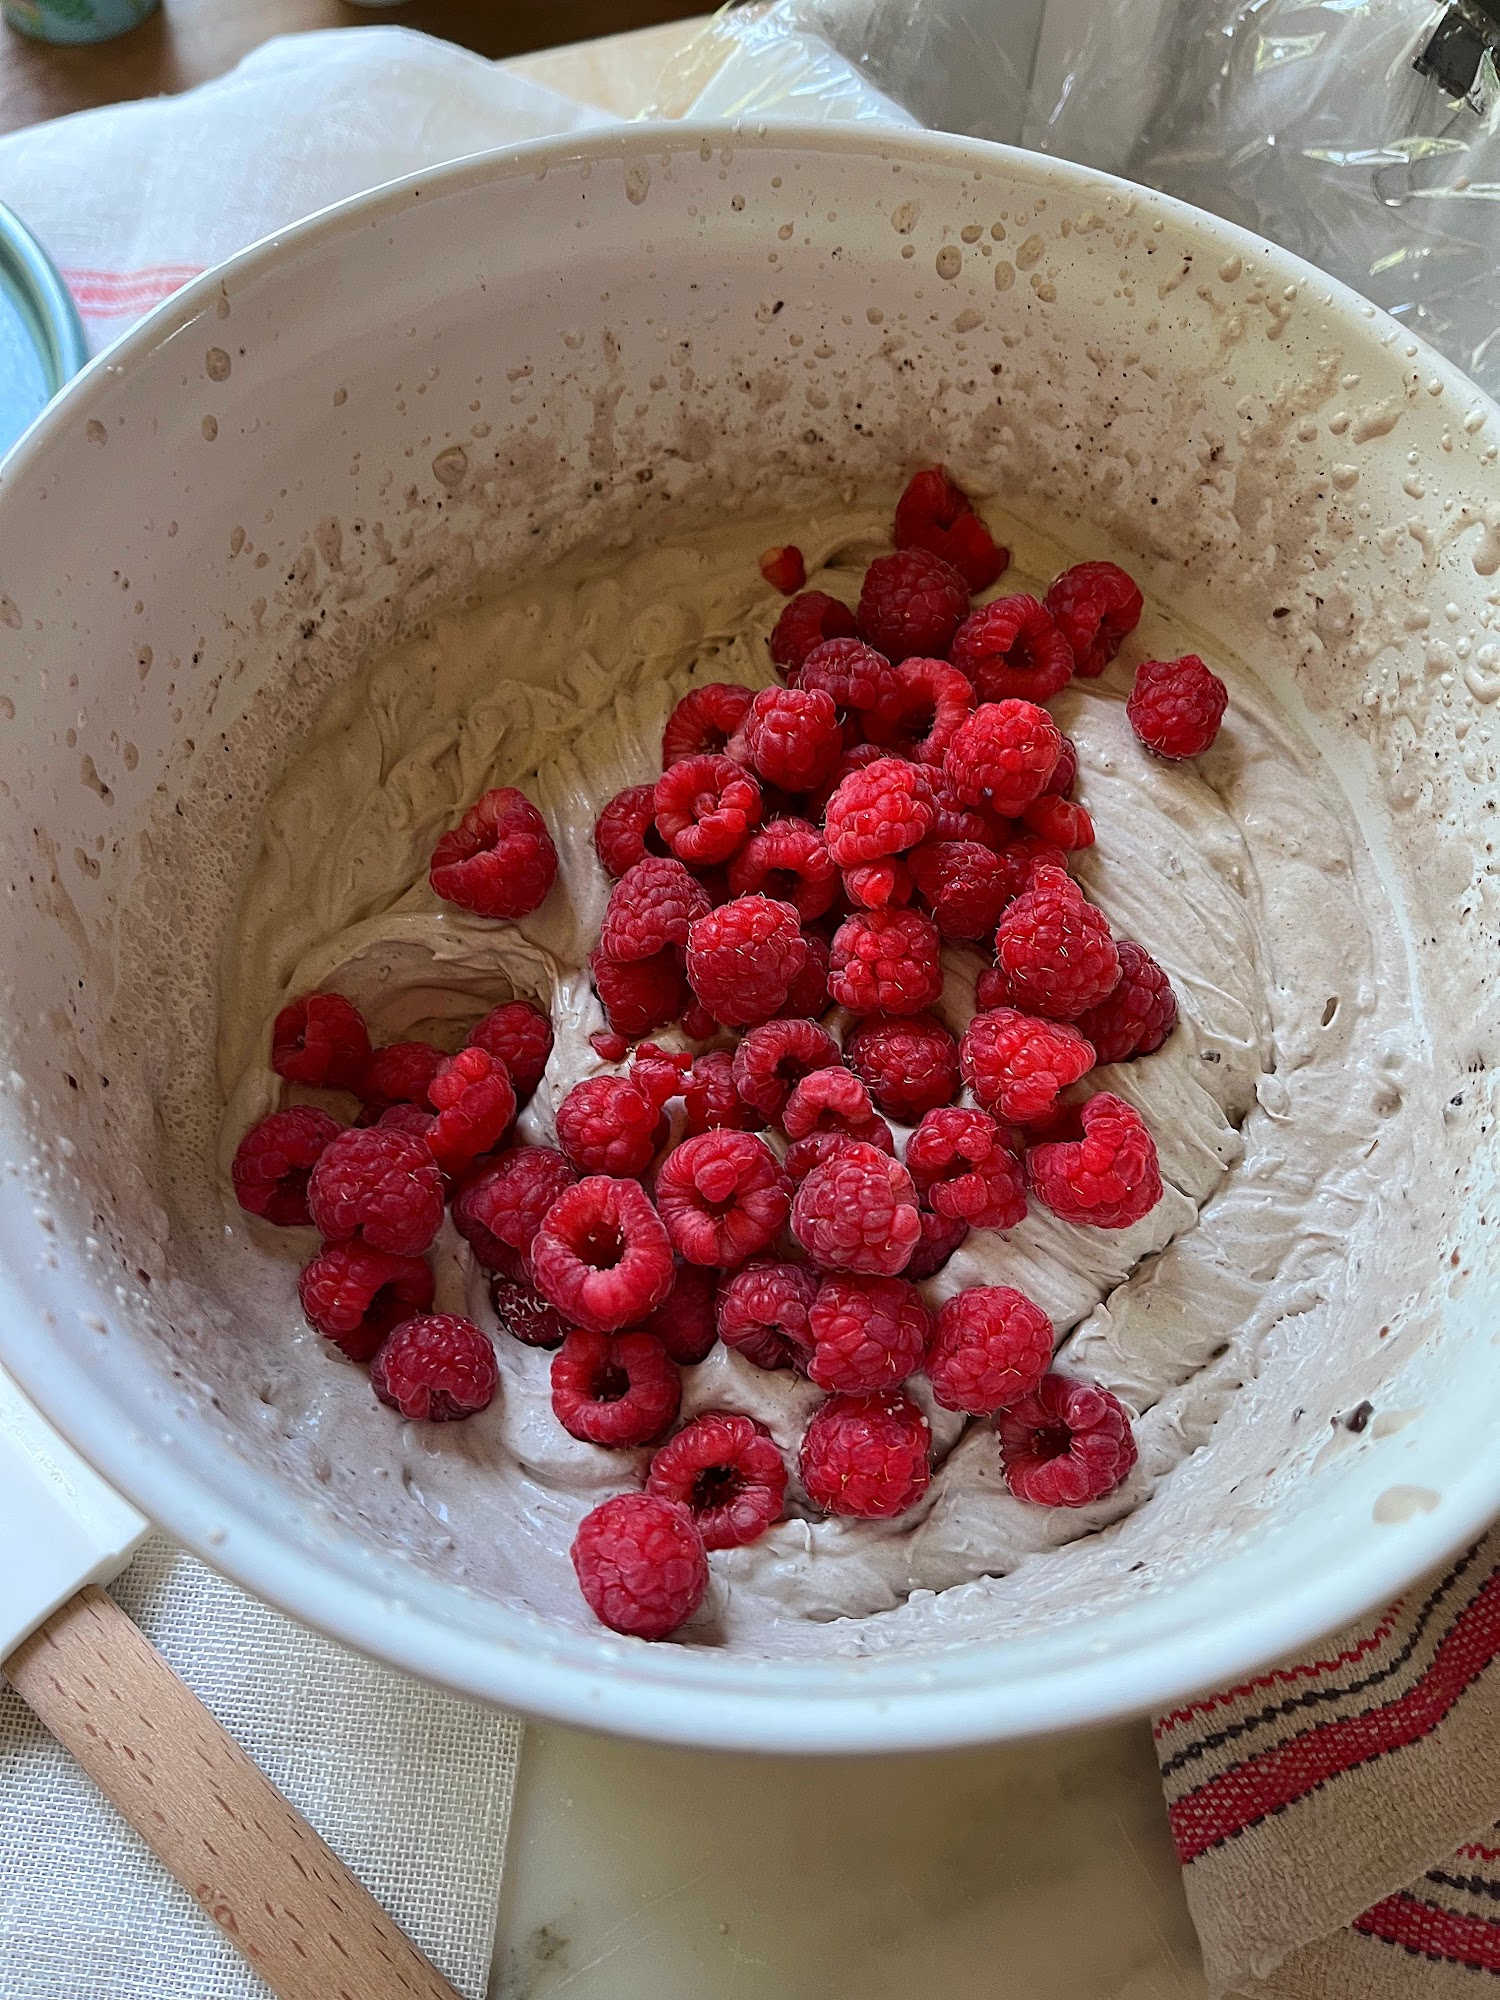 added raspberries